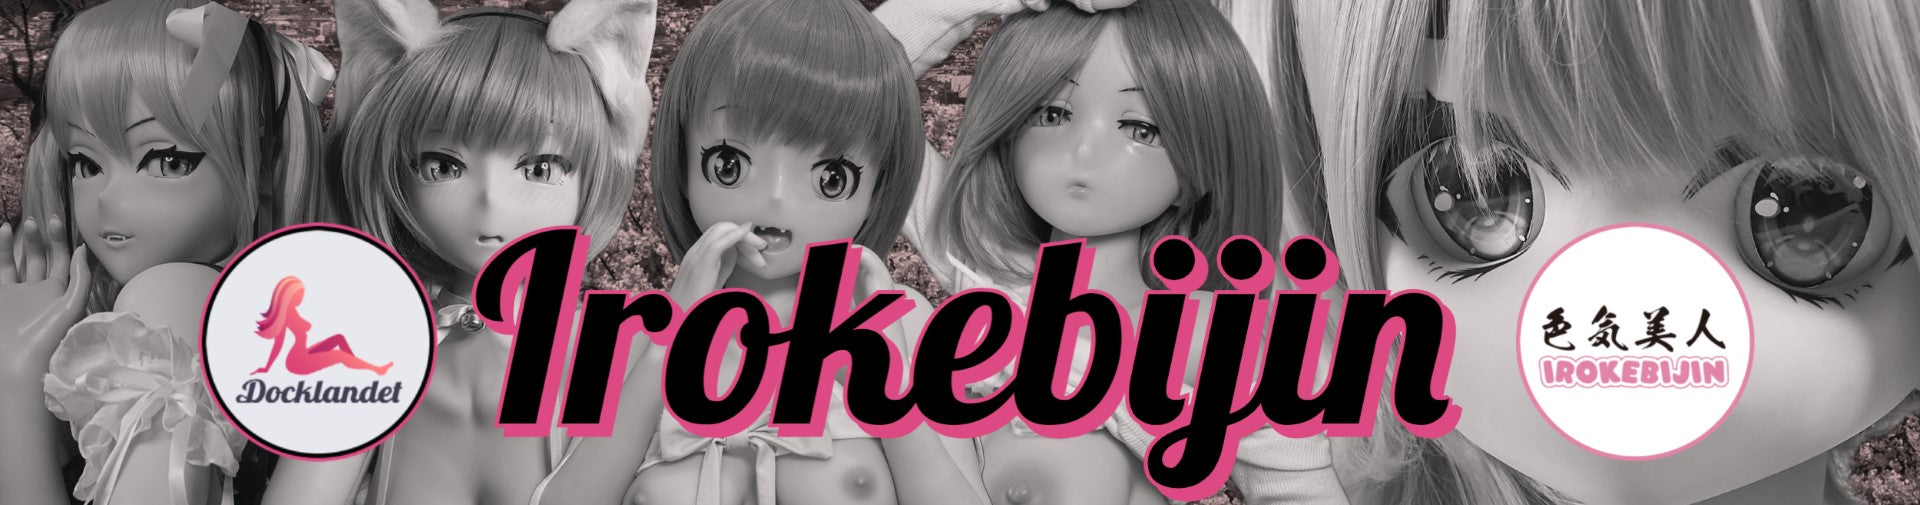 Irokebijin topp 10 sexdockor. Animesexdockor topplista, de bästa sexdockorna med anime-stil. Populära manga-sexdockor från Irokebijin. 